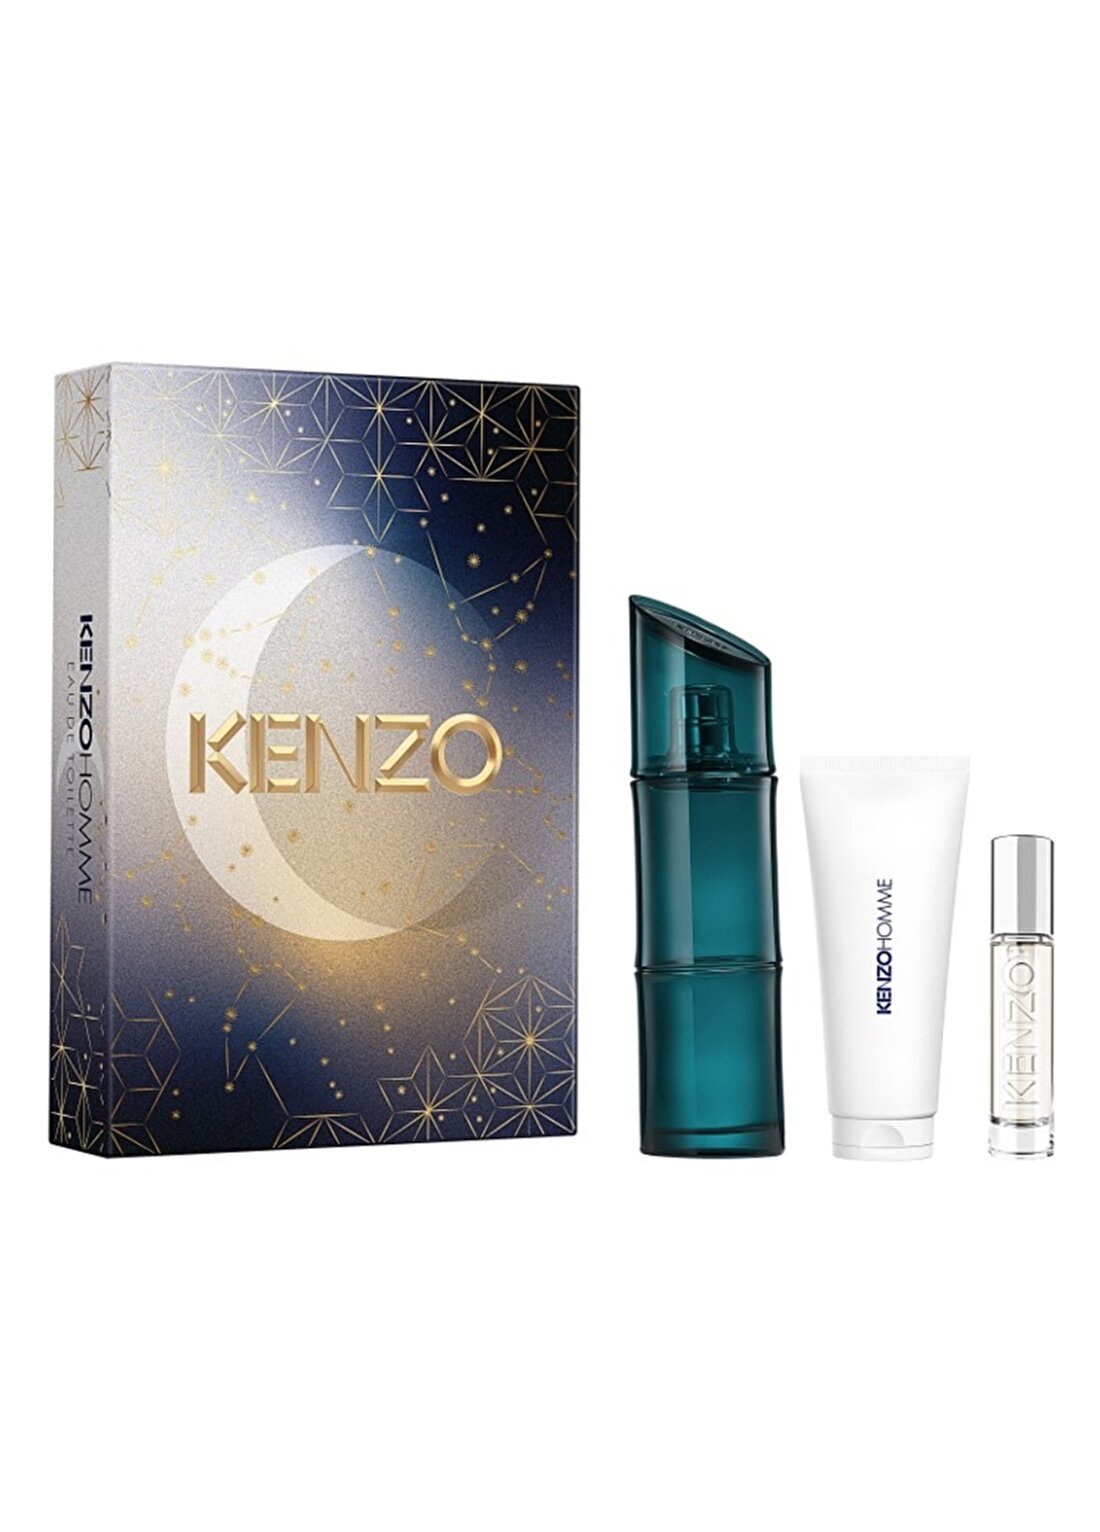 Kenzo Homme EDT Parfüm Set